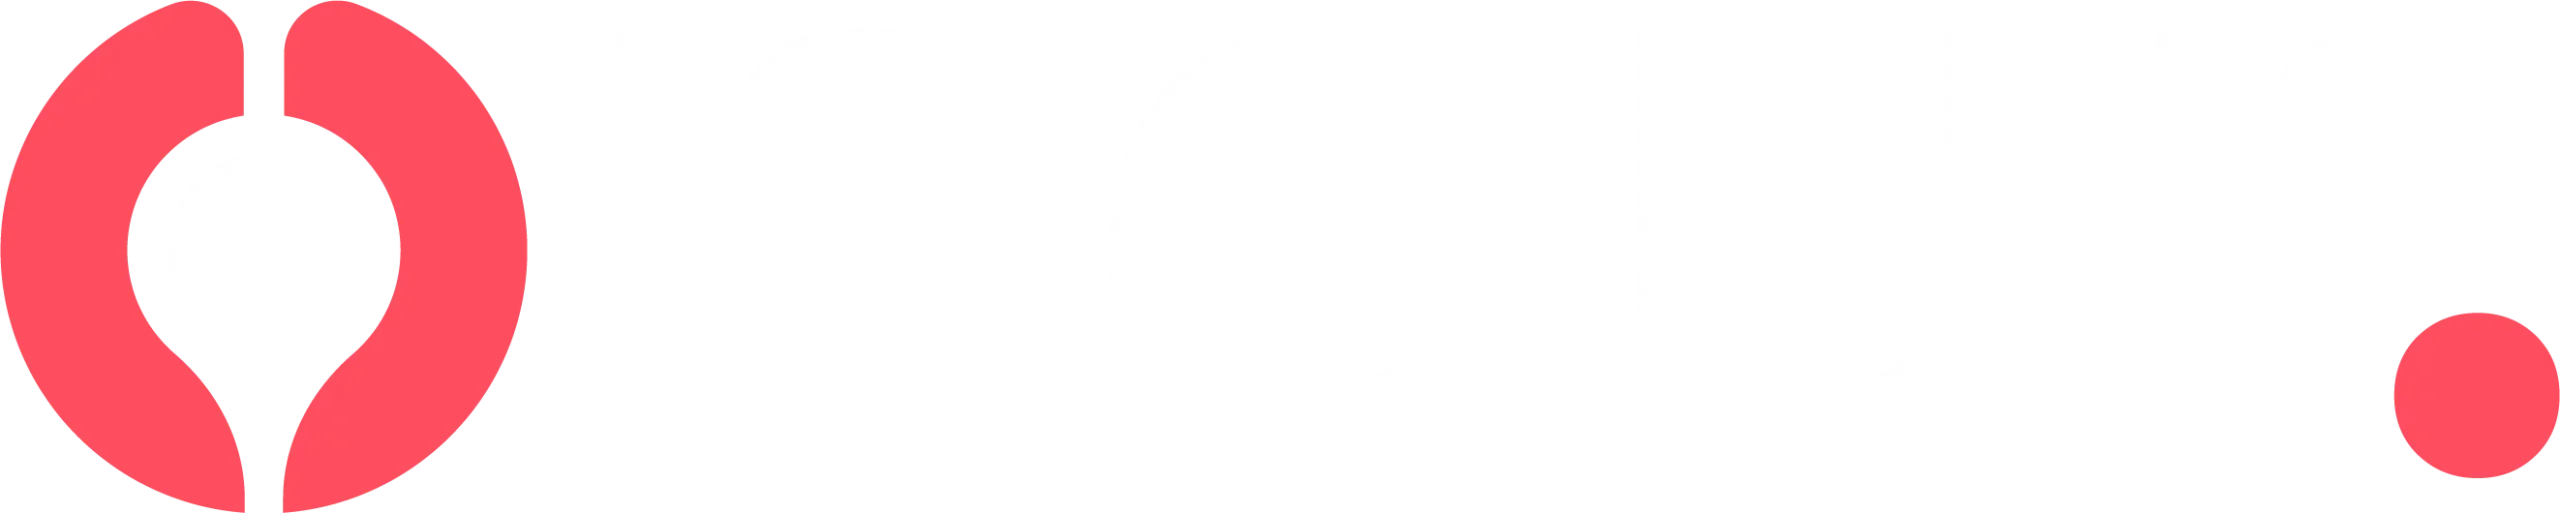 onour white logo